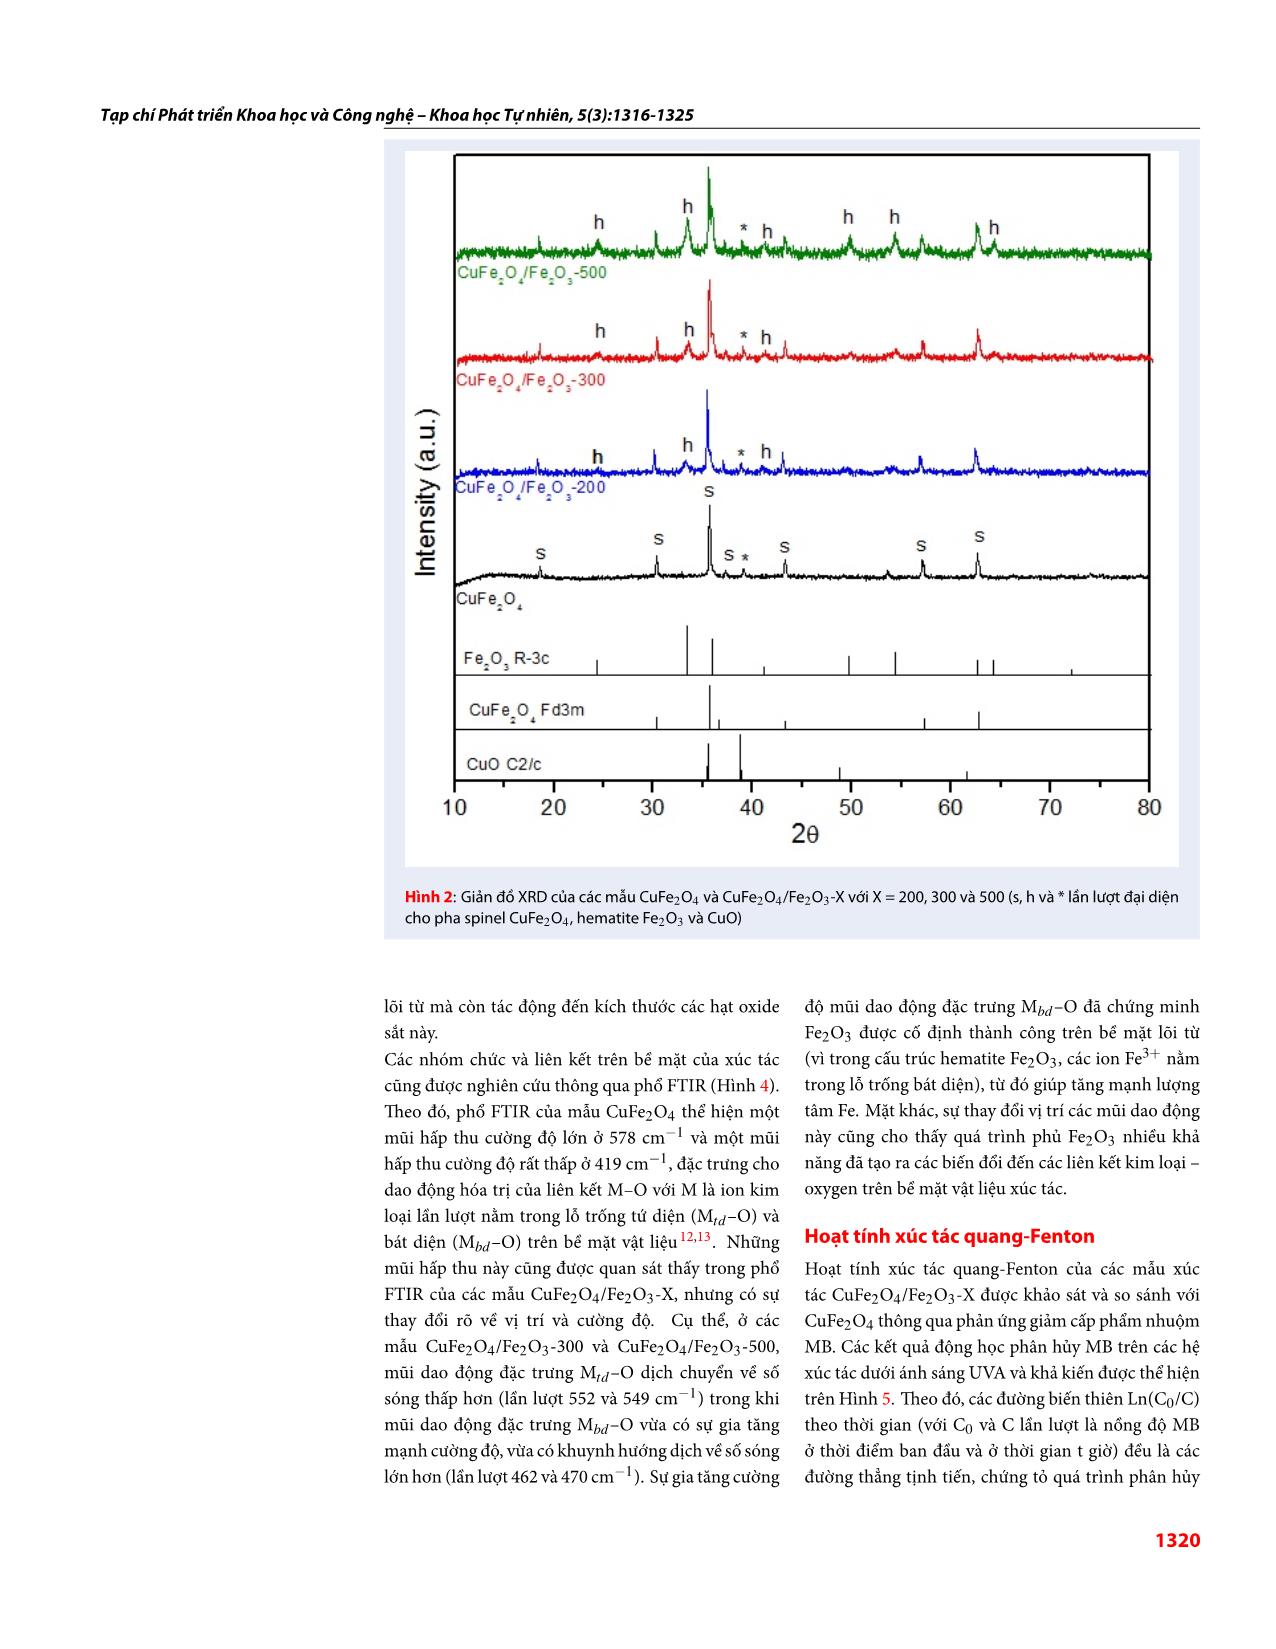 Nghiên cứu tổng hợp, đặc trưng và đánh giá hoạt tính xúc tác quang-Fenton của hệ xúc tác dị thể có từ tính CuFe₂O₄/Fe₂O₃ trang 5